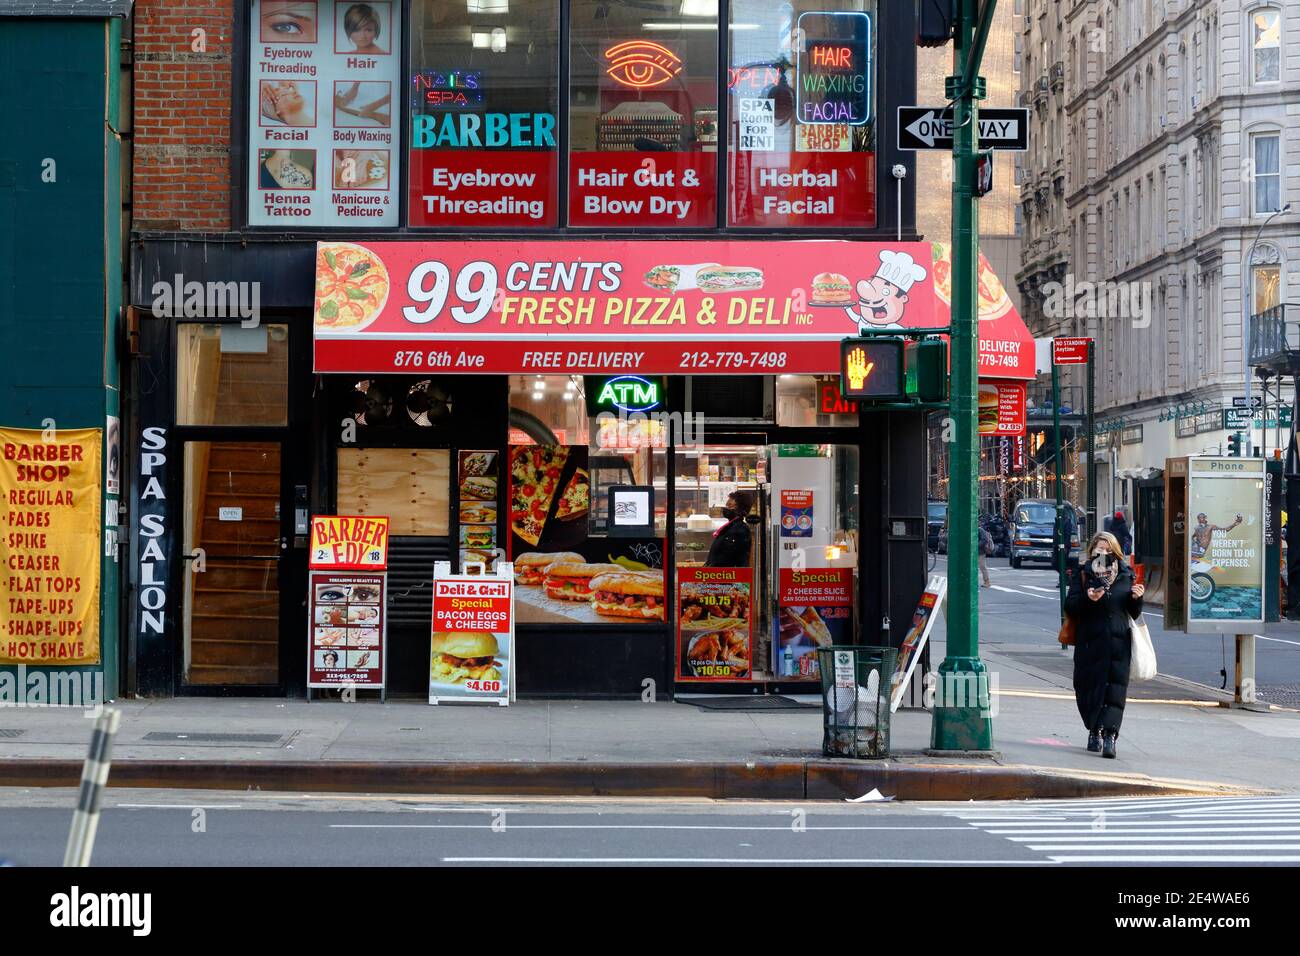 Un salone di parrucchiere e un negozio di alimentari di pizza al 99 cent, 876 6th Ave, New York, foto di fronte al negozio di New York di piccole imprese a Midtown Manhattan Foto Stock